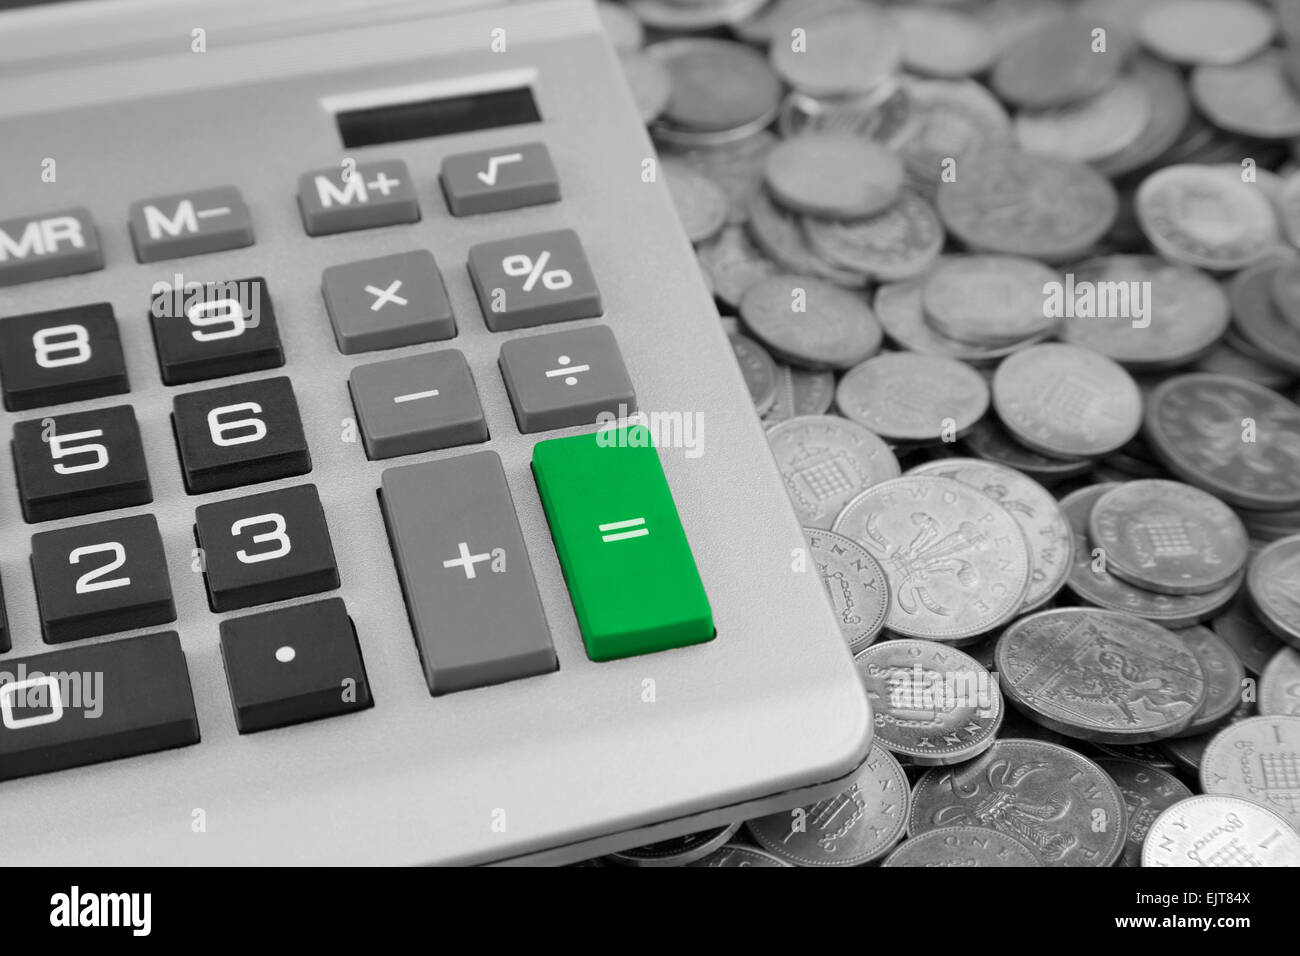 ein Schreibtisch Rechner mit grüne Schaltfläche "Equals" und Bank von England ein Pence und zwei Pence Münzen Stockfoto